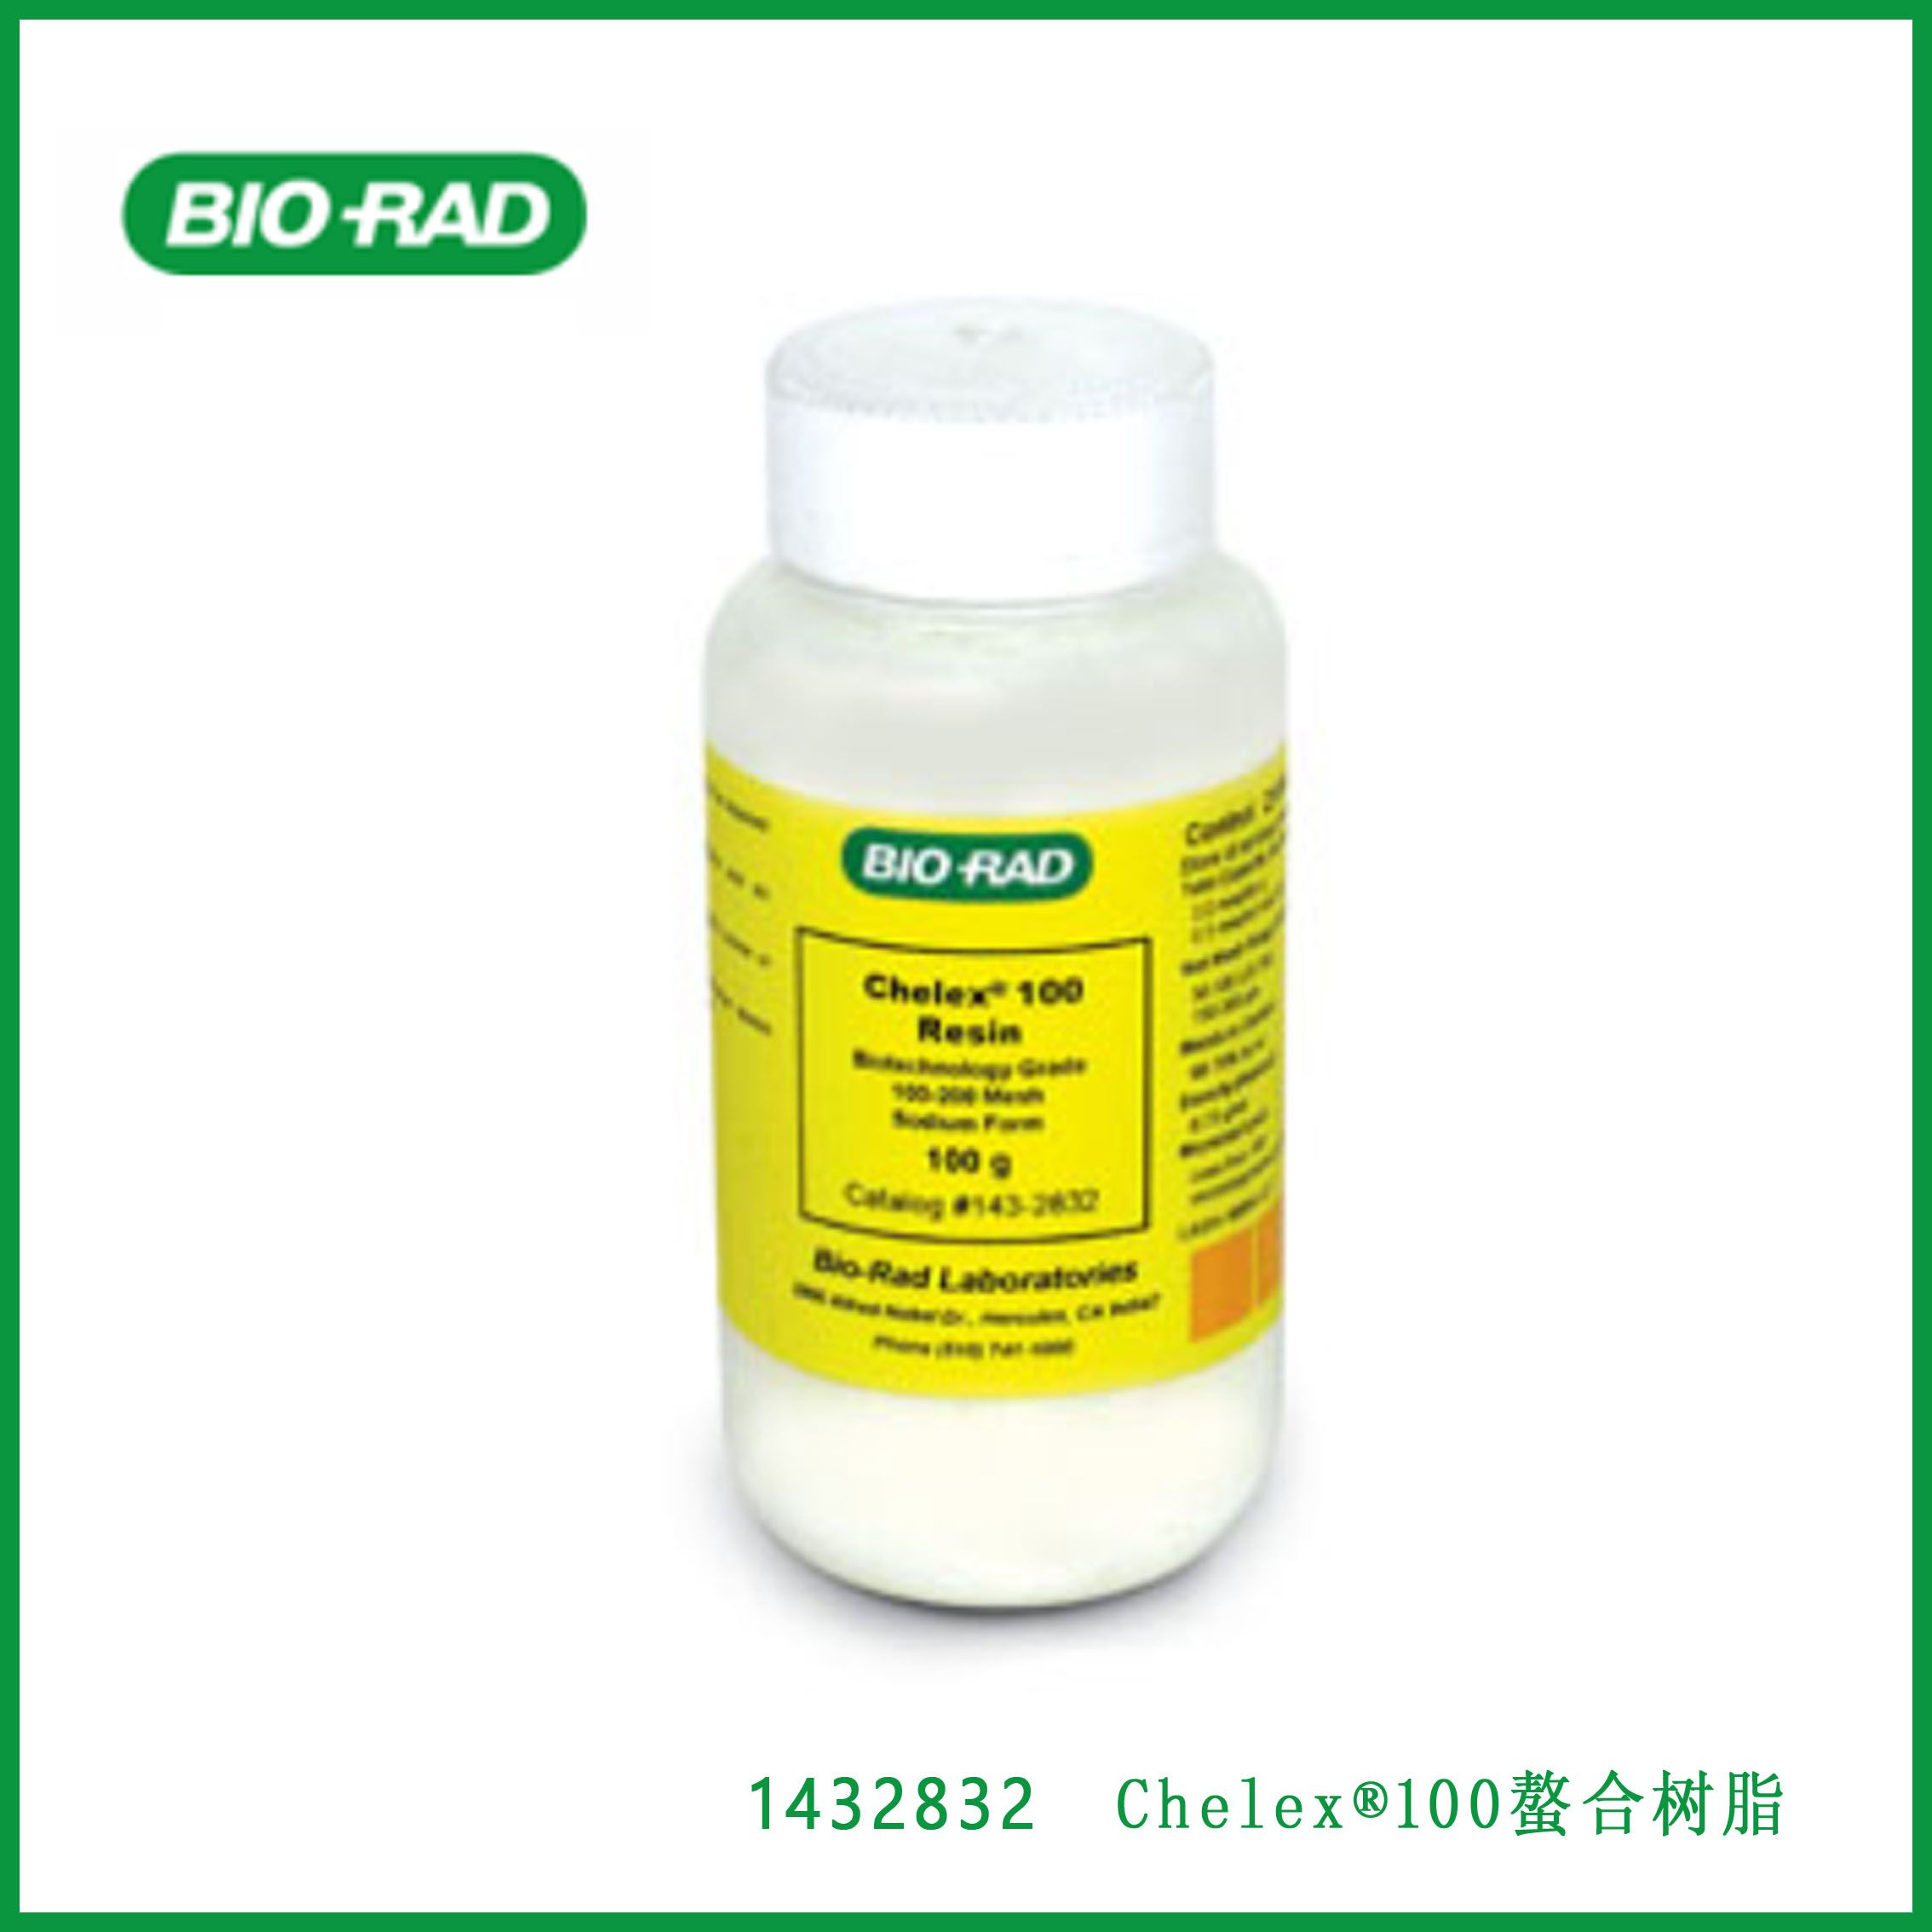 伯乐Bio-Rad 1432832 Chelex® 100 Chelating Resin, biotechnology grade, 100–200 mesh, sodium form, 100 g - 1432832 Chelex®100螯合树脂，生物技术级，100–200目，钠型，100 g，现货